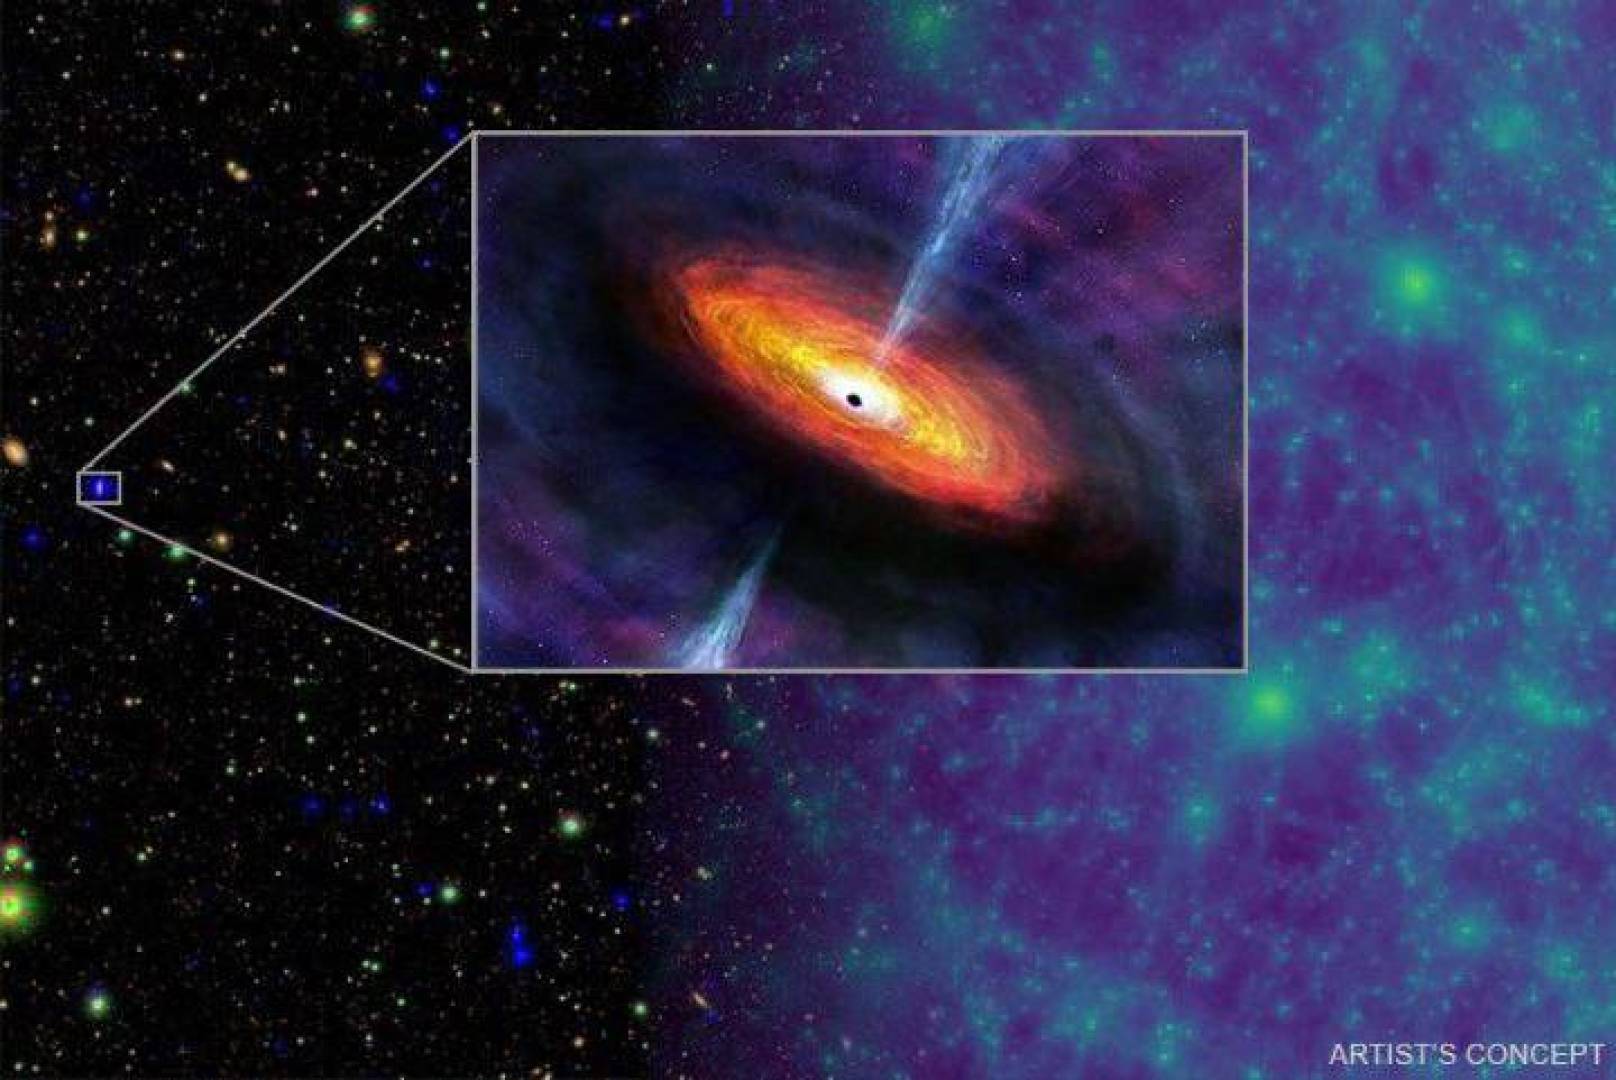 دراسة جديدة باستخدام محاكاة متقدمة تشرح نمو الثقوب السوداء الهائلة في الكون